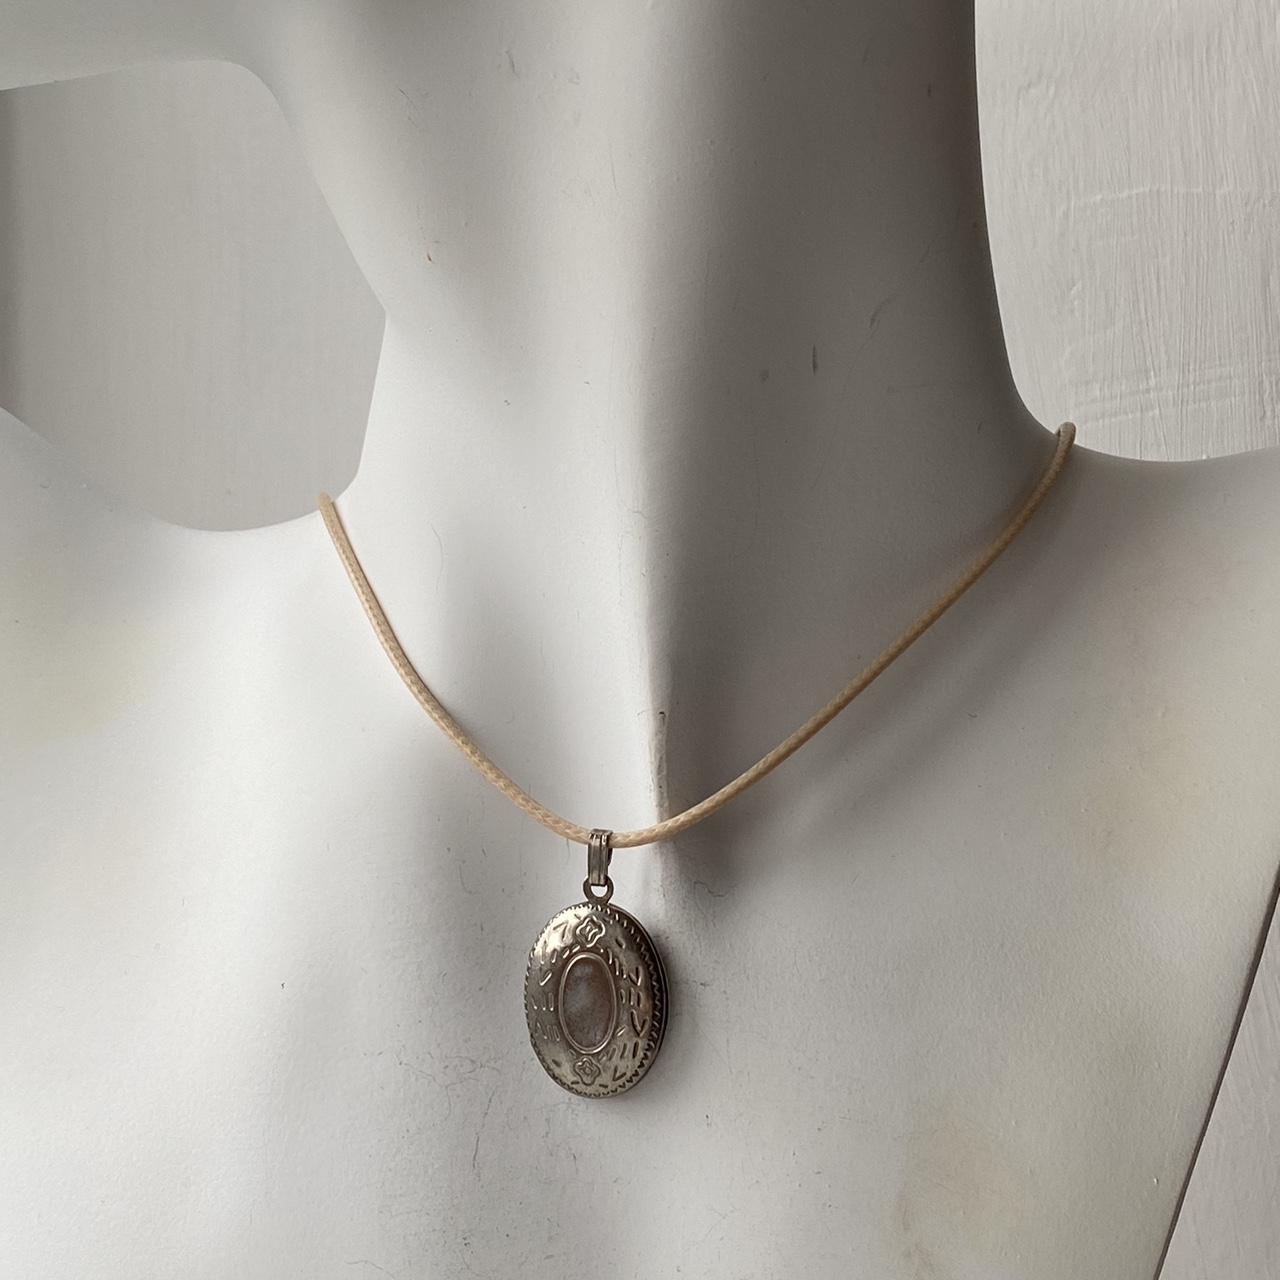 Vintage silver locket pendant on beige rope necklace... - Depop